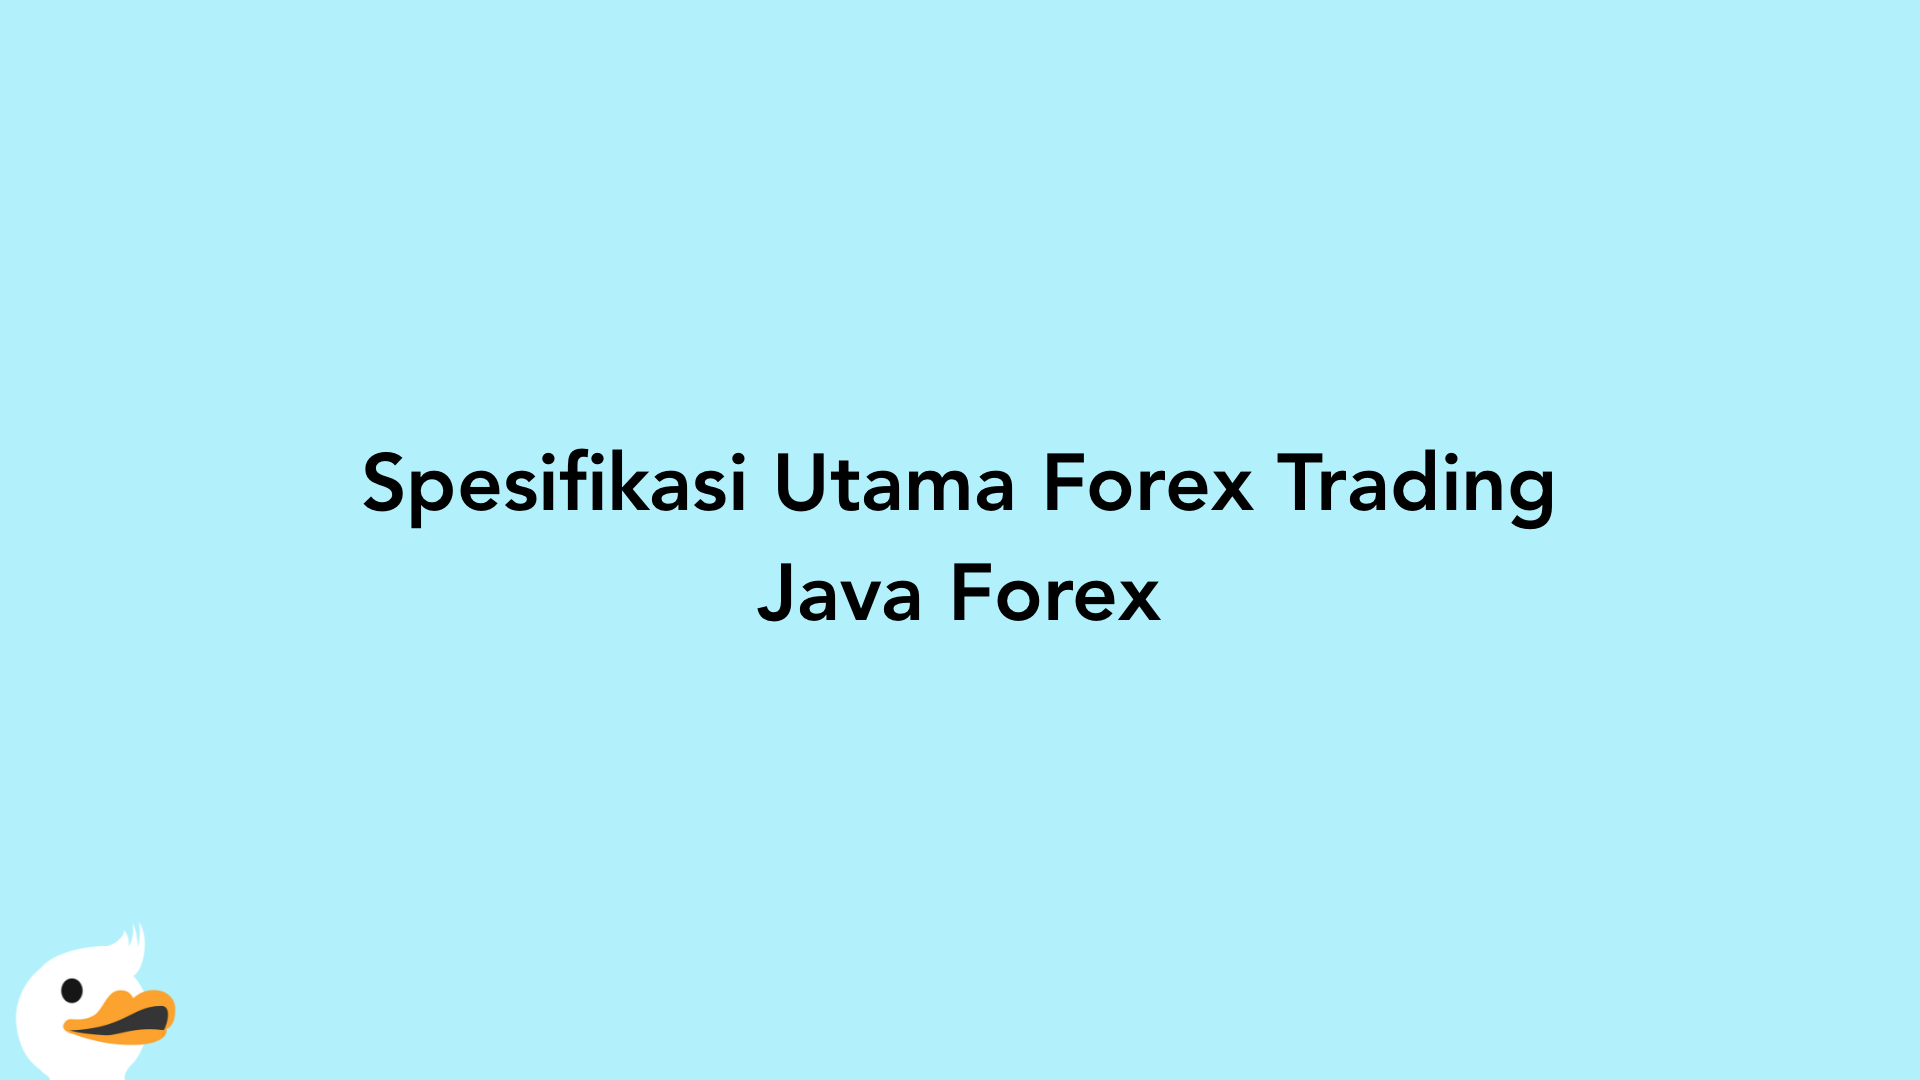 Spesifikasi Utama Forex Trading Java Forex